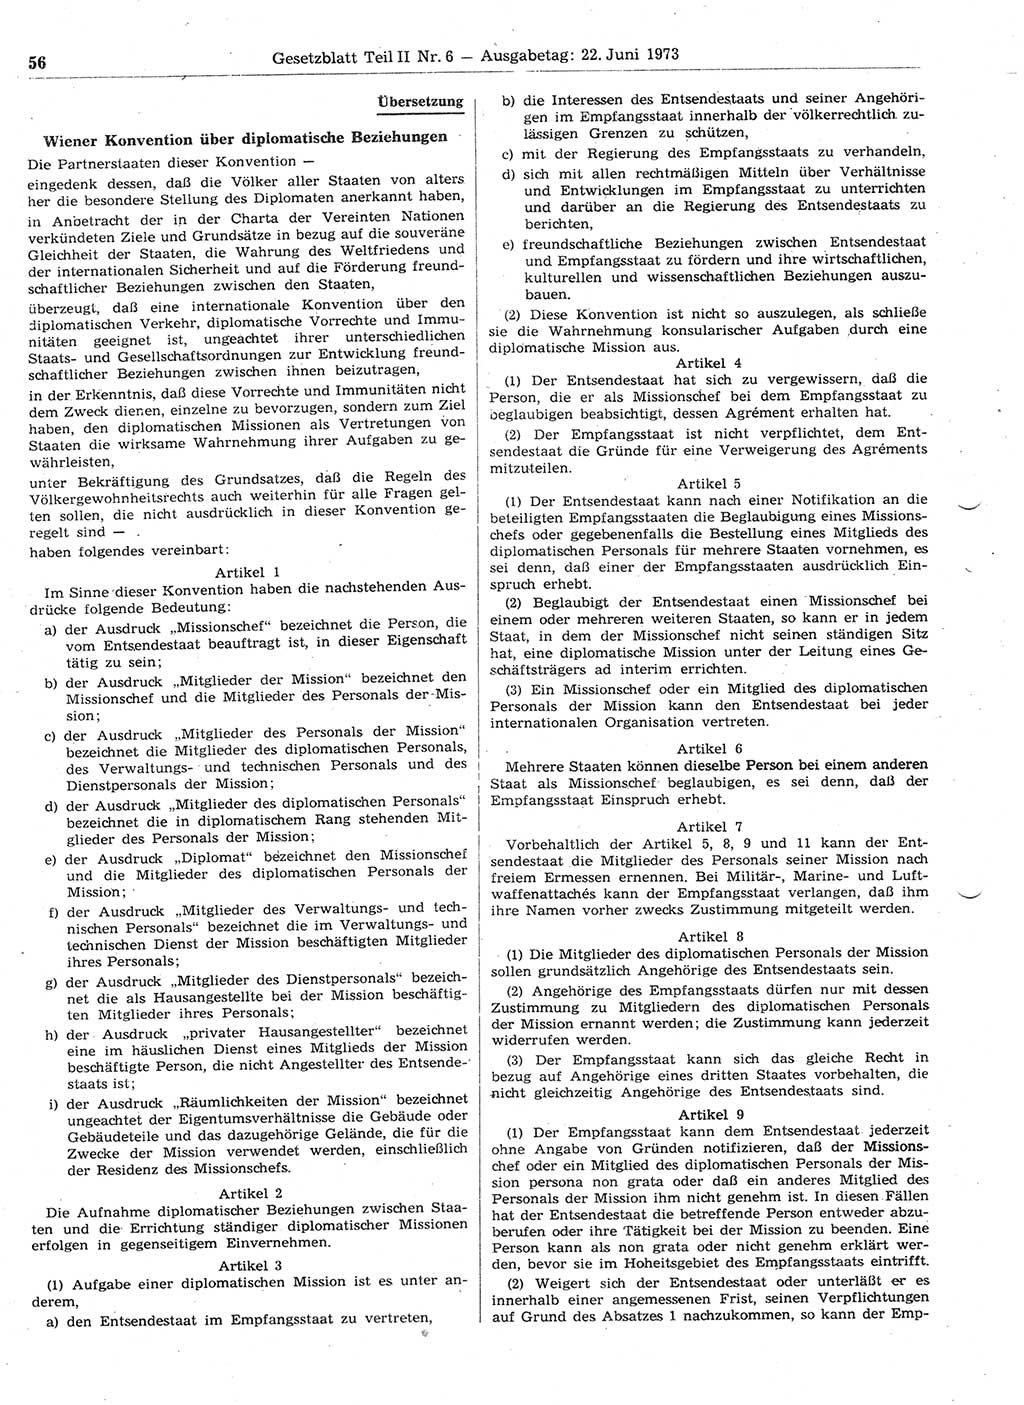 Gesetzblatt (GBl.) der Deutschen Demokratischen Republik (DDR) Teil ⅠⅠ 1973, Seite 56 (GBl. DDR ⅠⅠ 1973, S. 56)